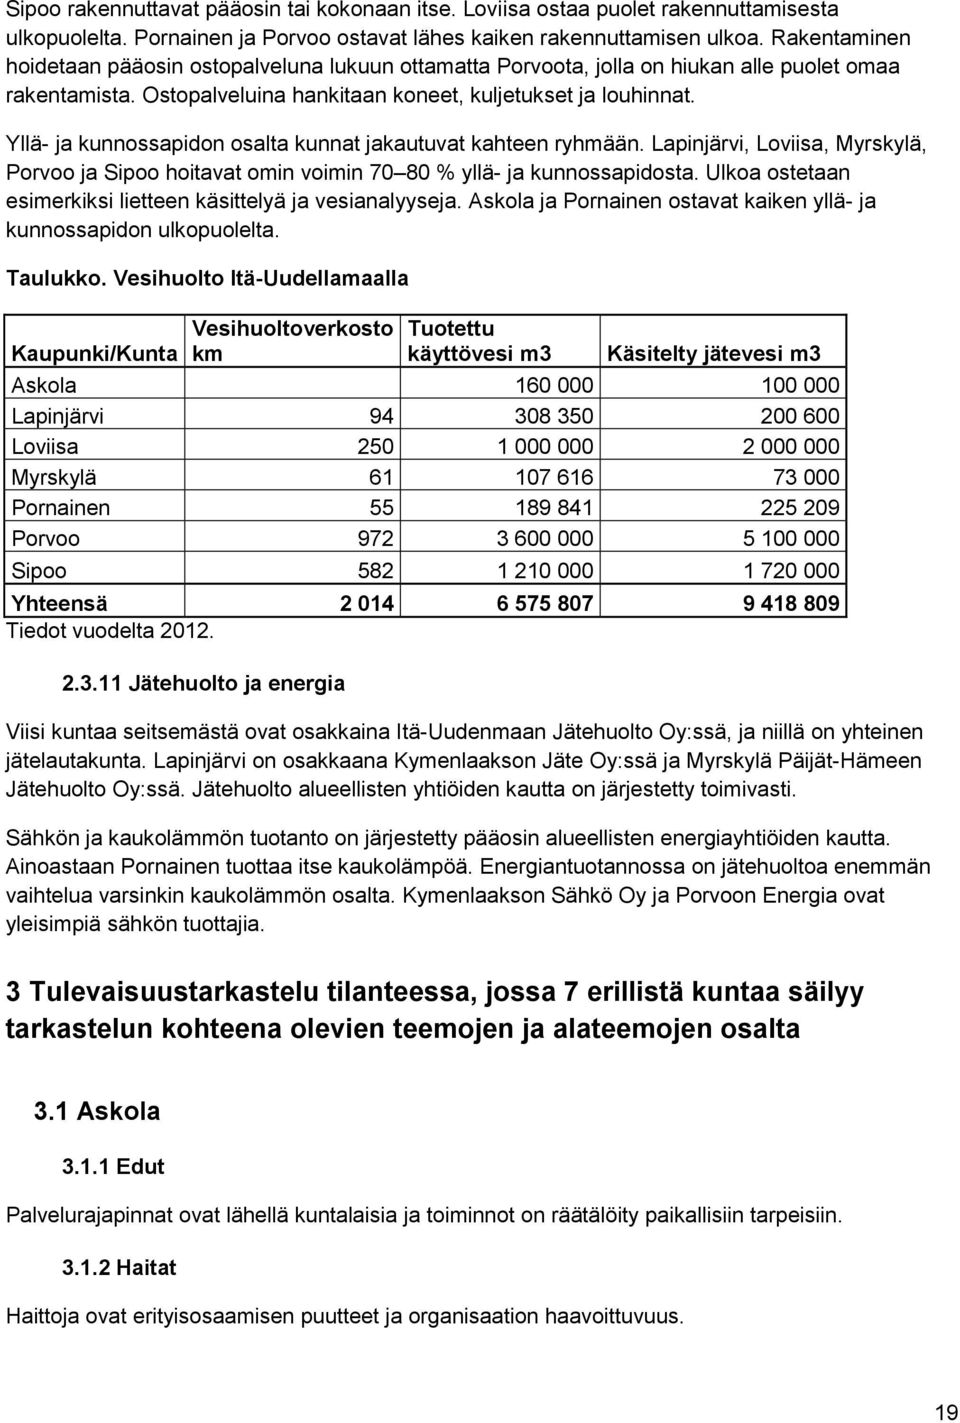 Yllä- ja kunnossapidon osalta kunnat jakautuvat kahteen ryhmään. Lapinjärvi, Loviisa, Myrskylä, Porvoo ja Sipoo hoitavat omin voimin 70 80 % yllä- ja kunnossapidosta.